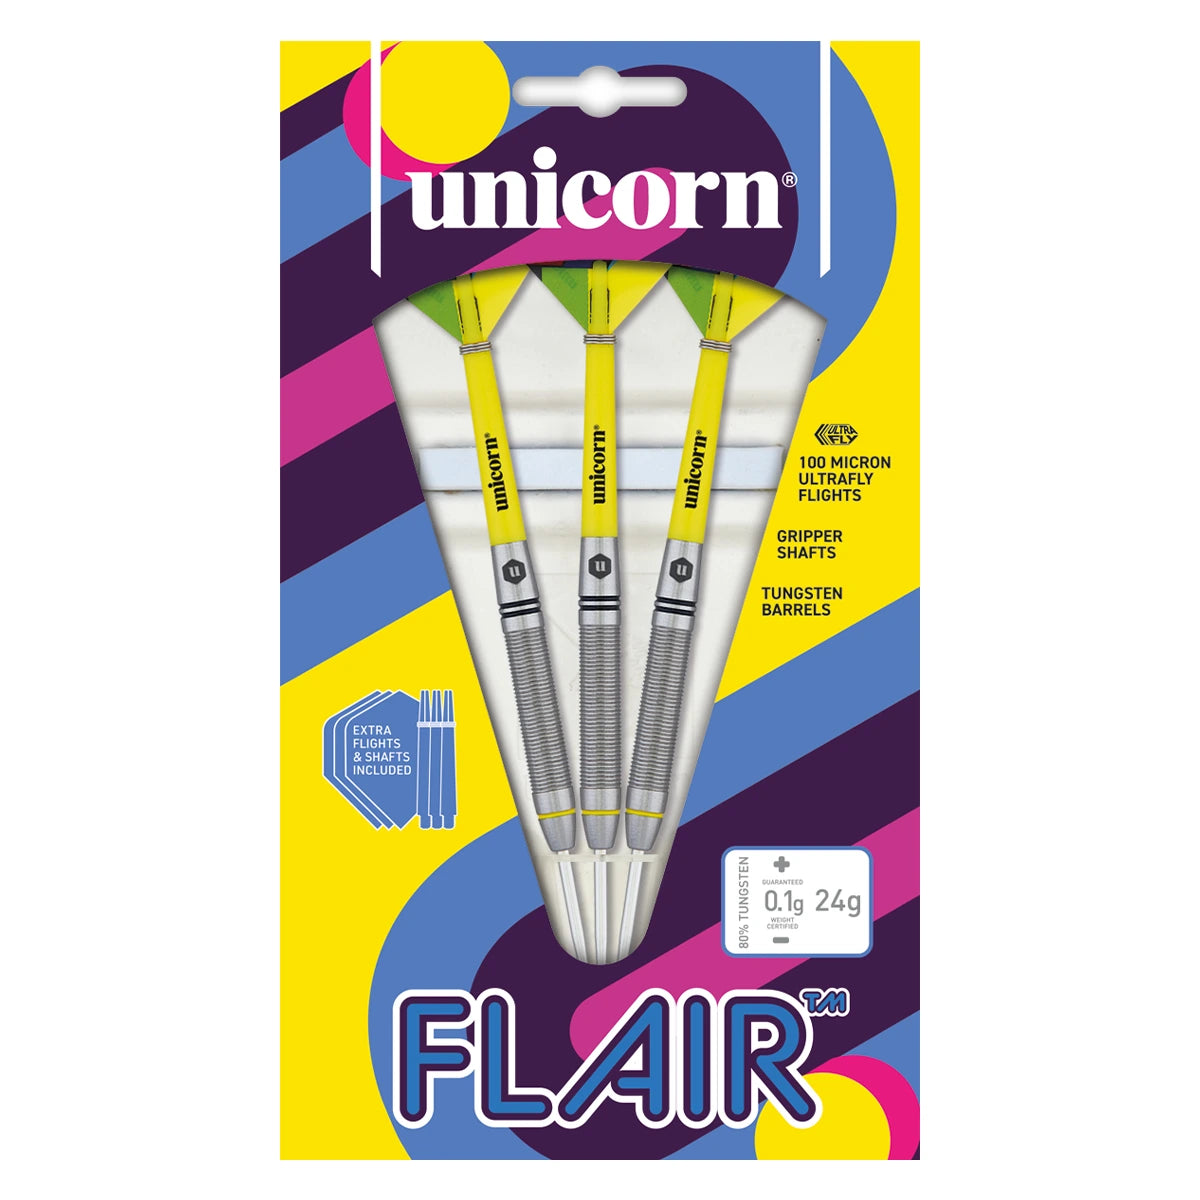 Unicorn Flair 80% Tungsten 24g Darts